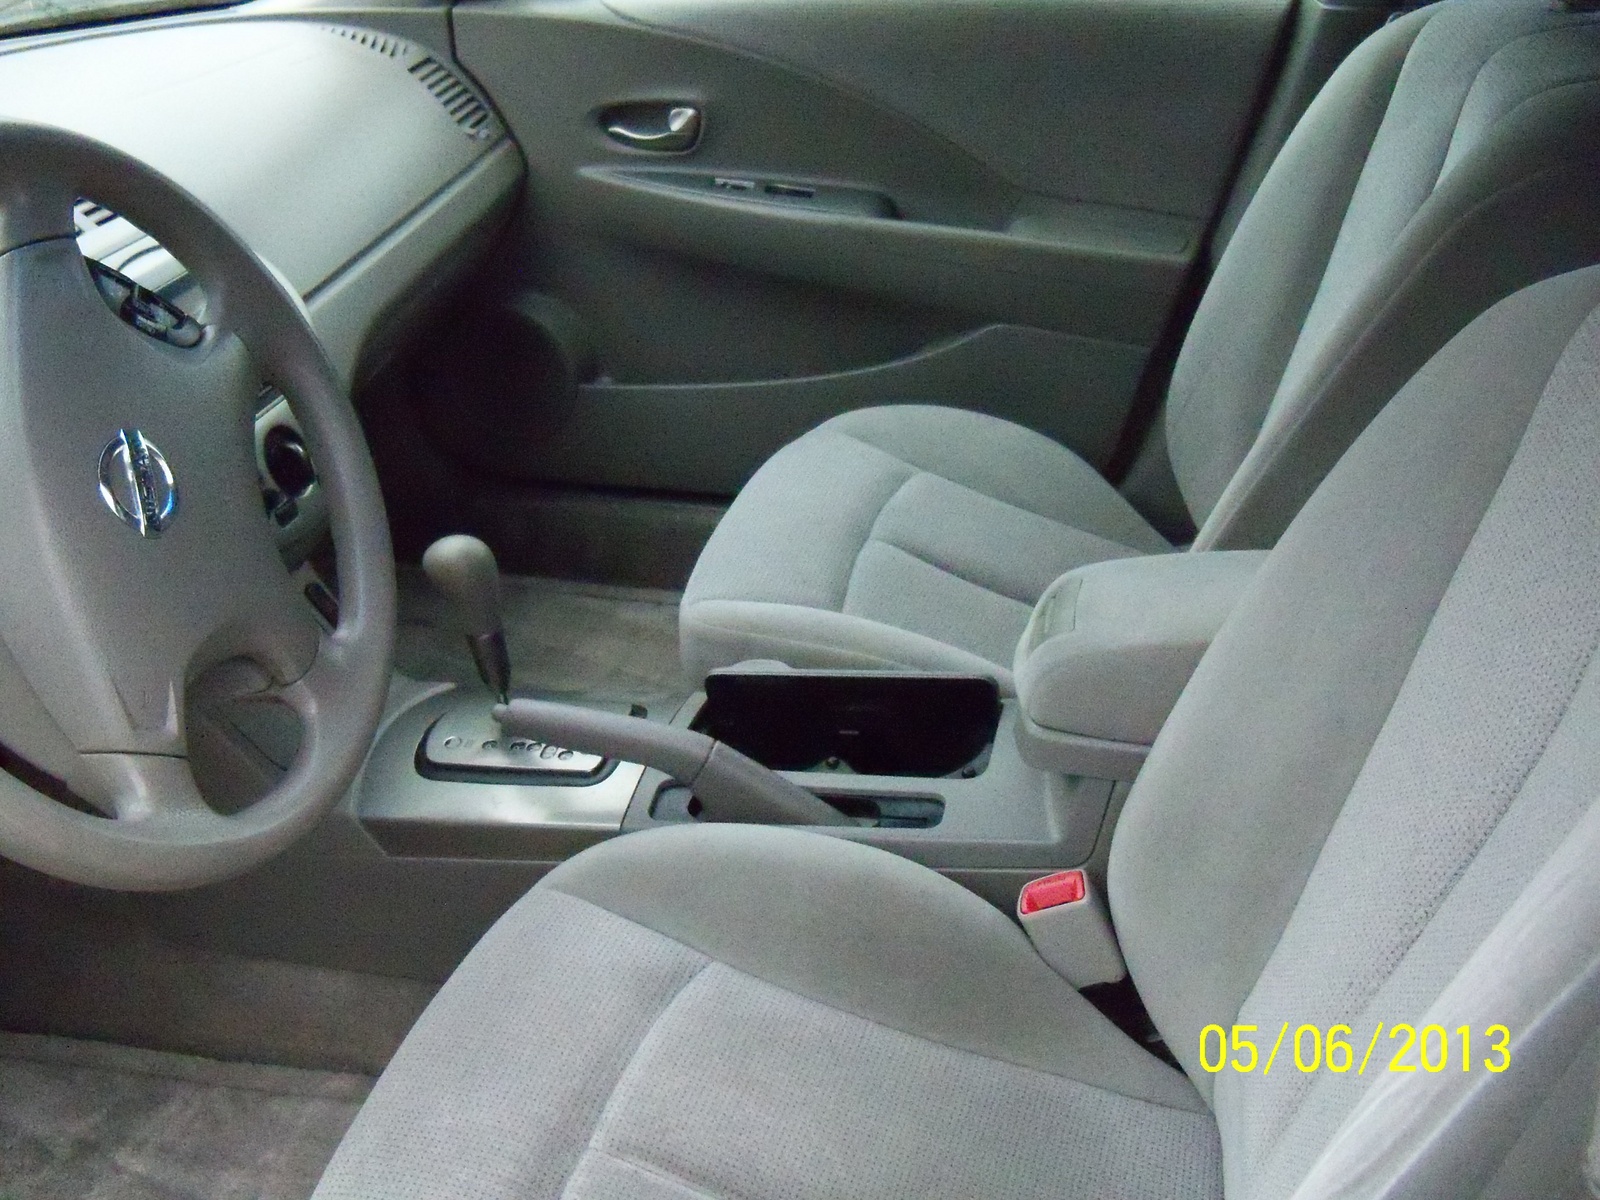 2003 Nissan altima interior dimensions #8